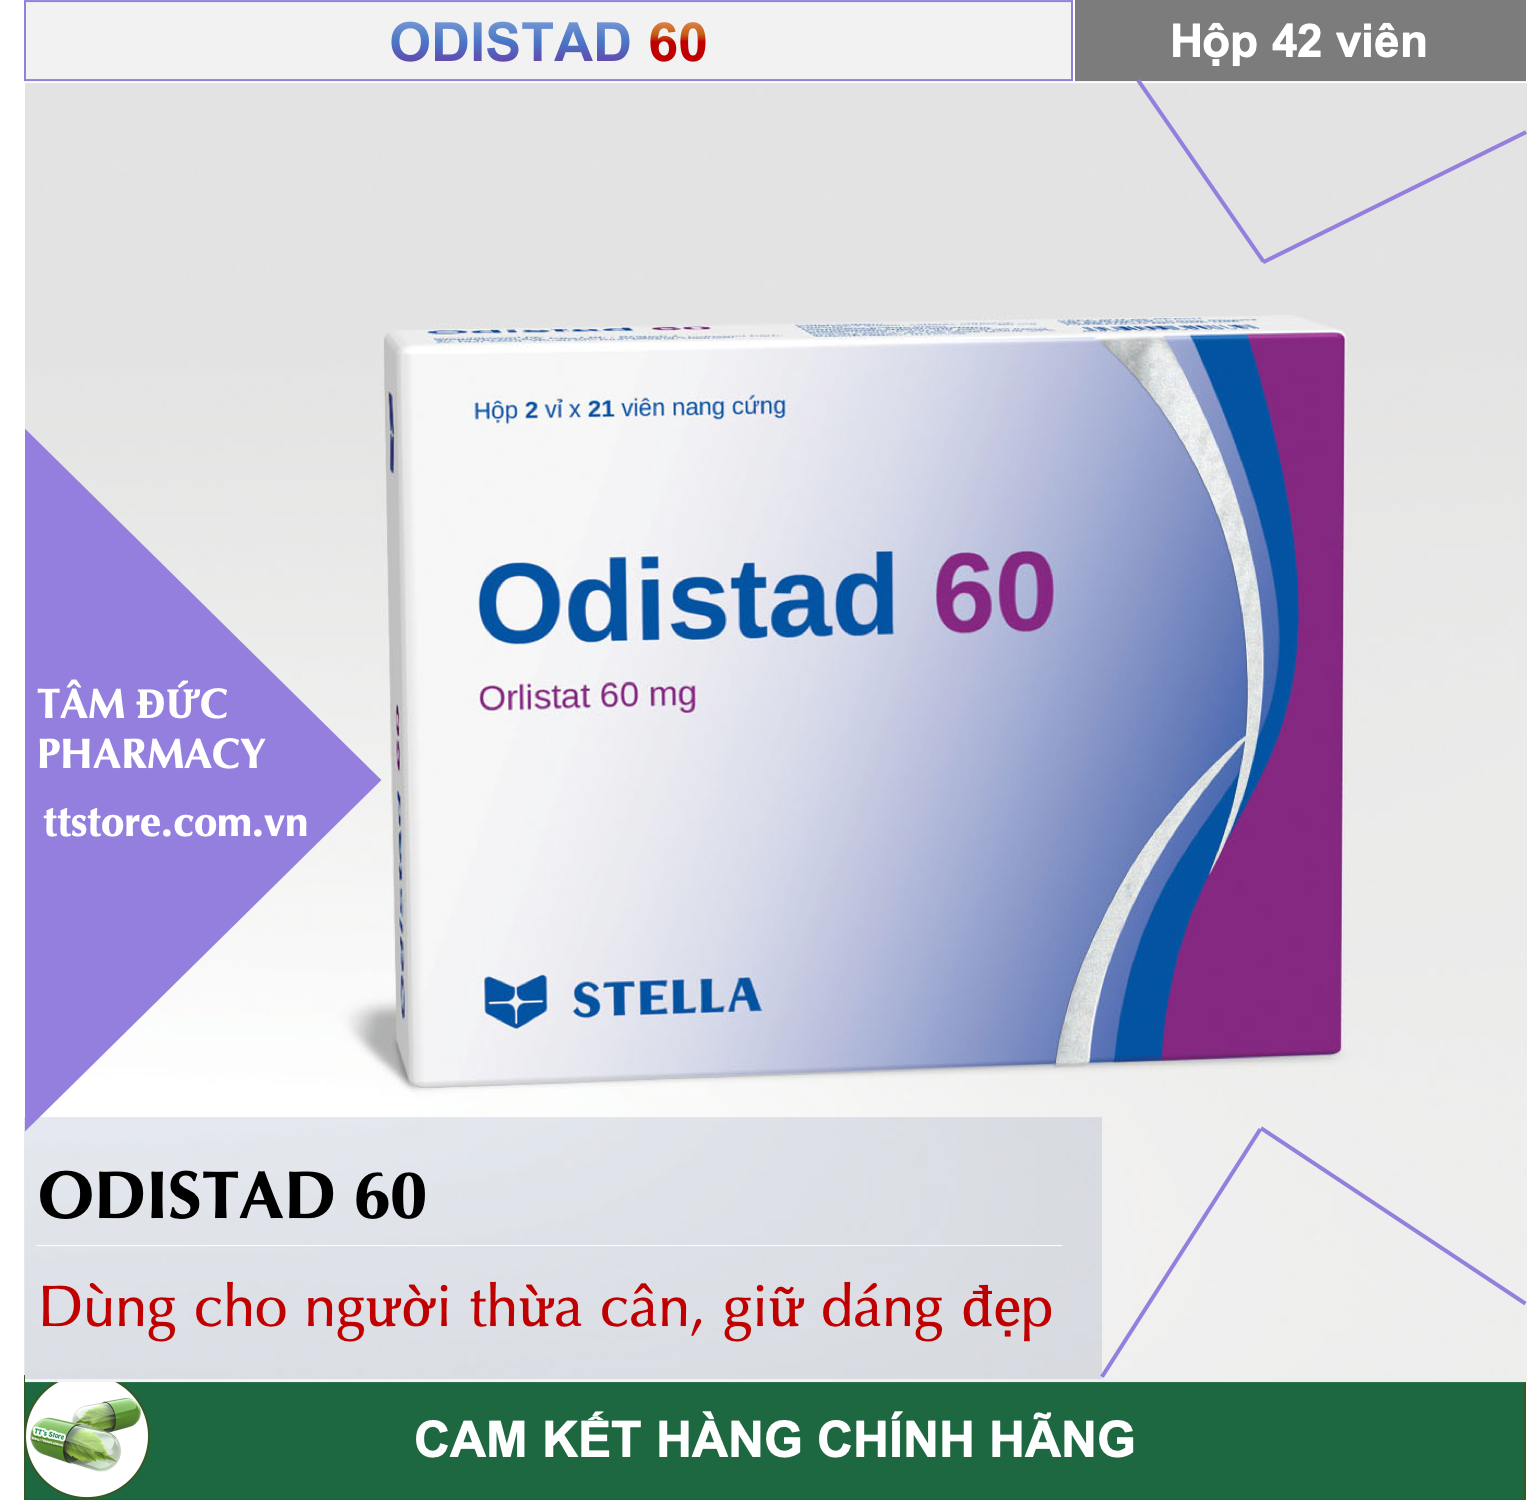 ODISTAD / ORLISTAD 60mg [Hộp 42 viên] - Giảm cân hiệu quả cho dân văn phòng [lic an nhiên detox]